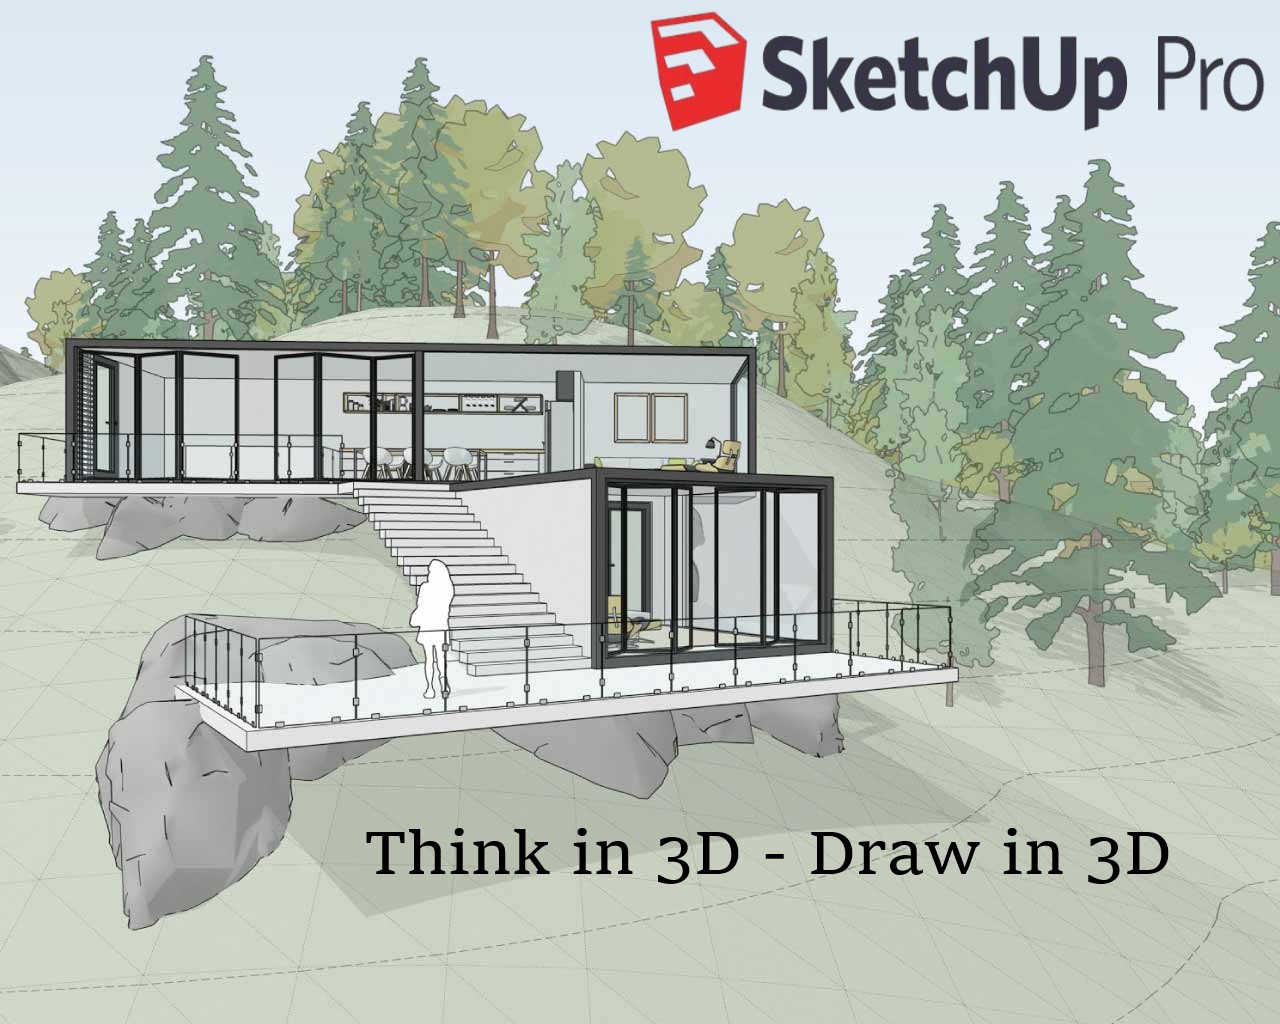 SketchUp Pro là một trong những phần mềm thiết kế 3D chuyên nghiệp nhất trên thị trường hiện nay! Thật tuyệt vời khi bạn có thể tạo ra các mô hình 3D, kết hợp màu sắc và ánh sáng chân thực, và trải qua những trải nghiệm sáng tạo tuyệt vời! Hãy xem đến hình ảnh và khám phá tương lai của thiết kế 3D!